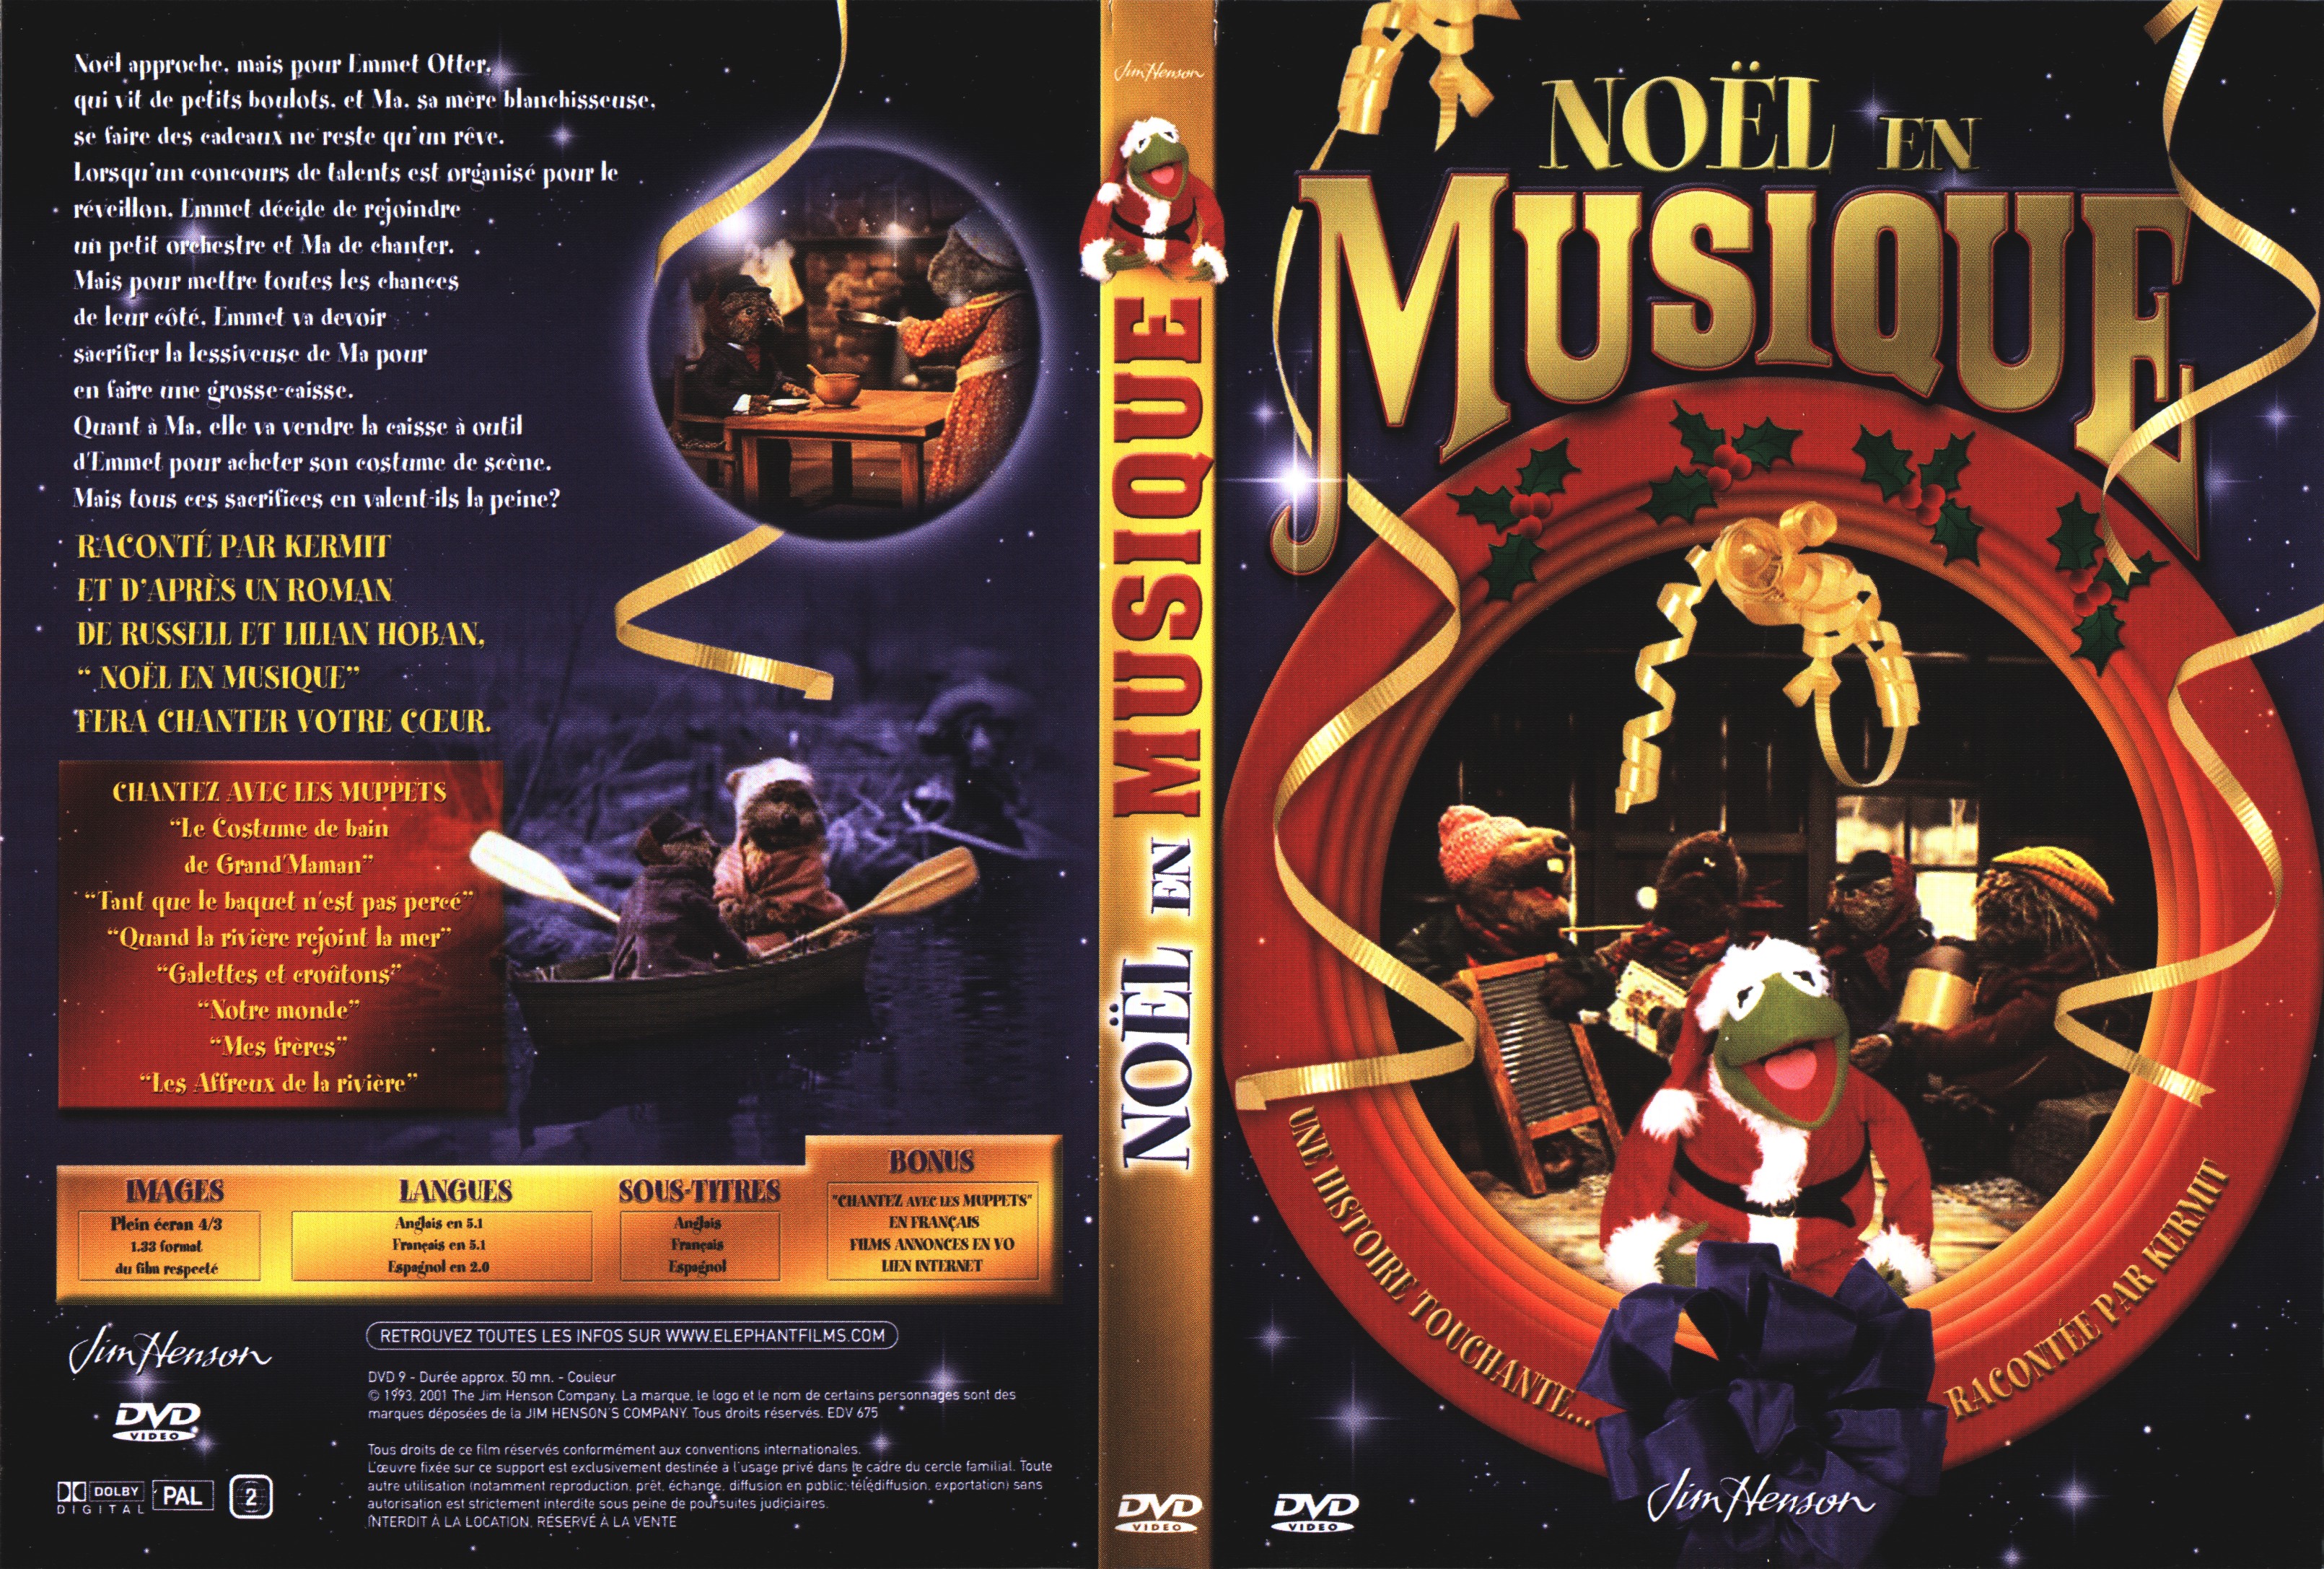 Jaquette DVD Noel en musique